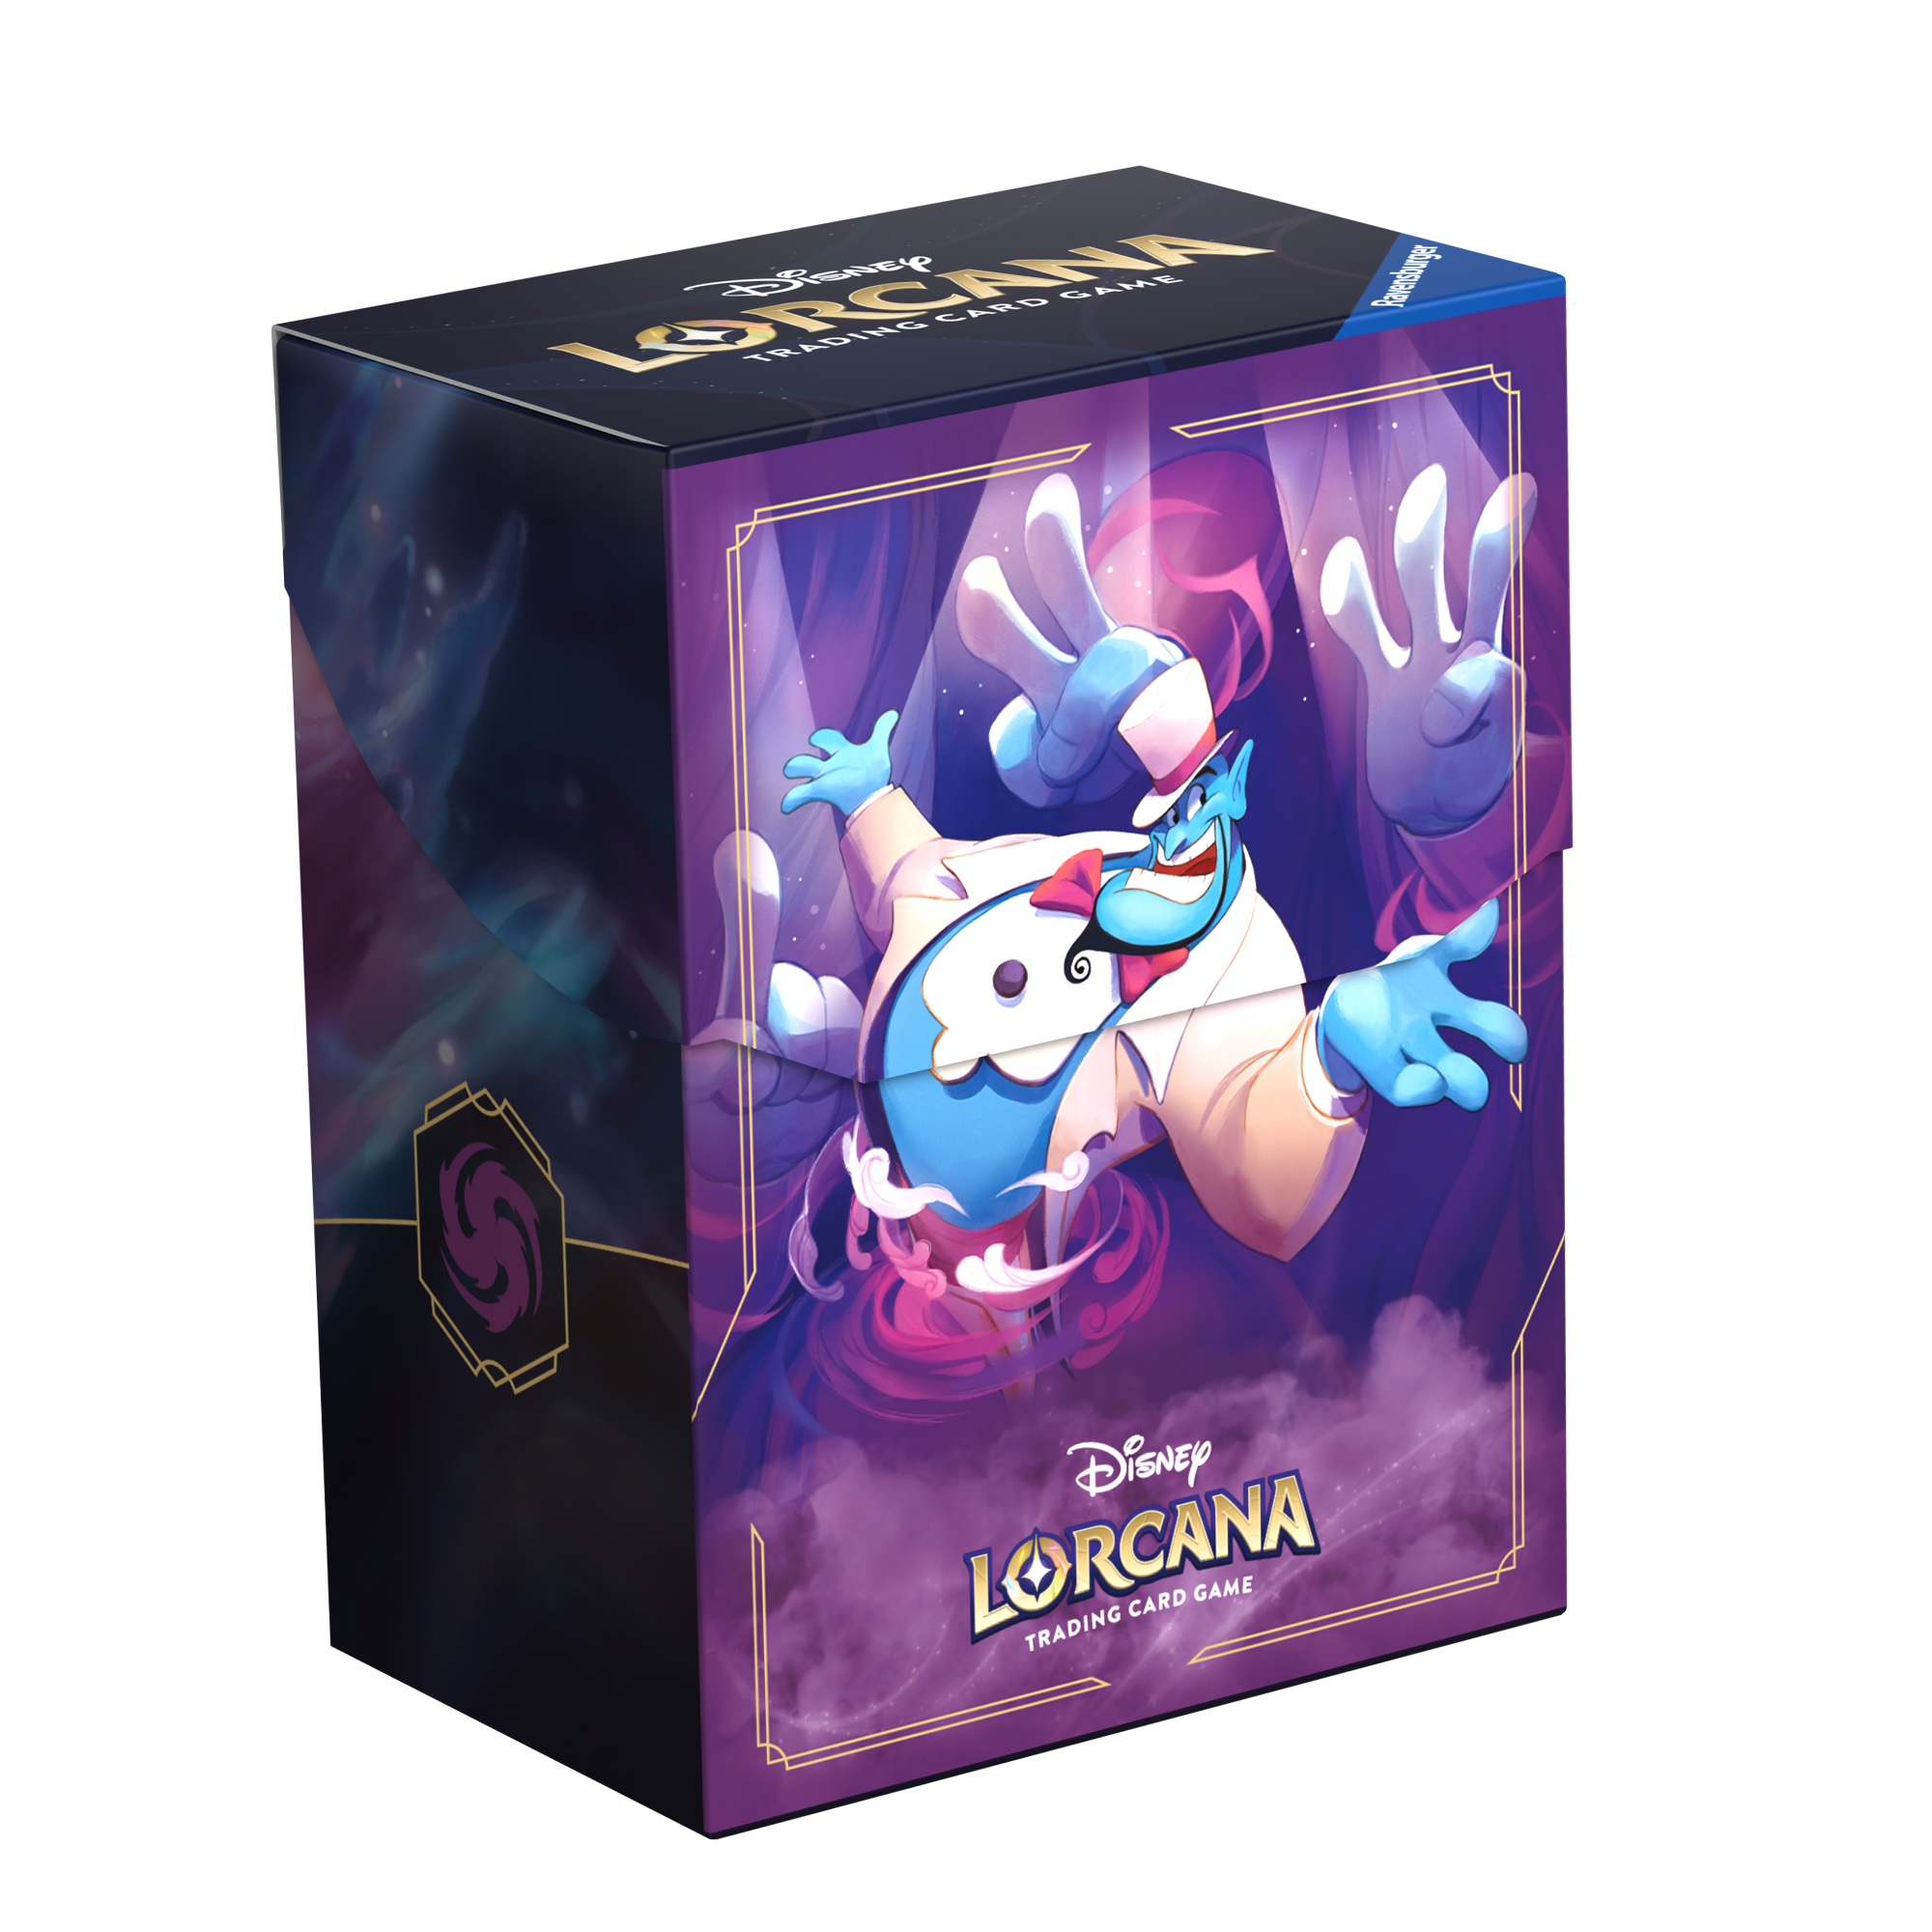 Disney Lorcana - Deckbox Genie